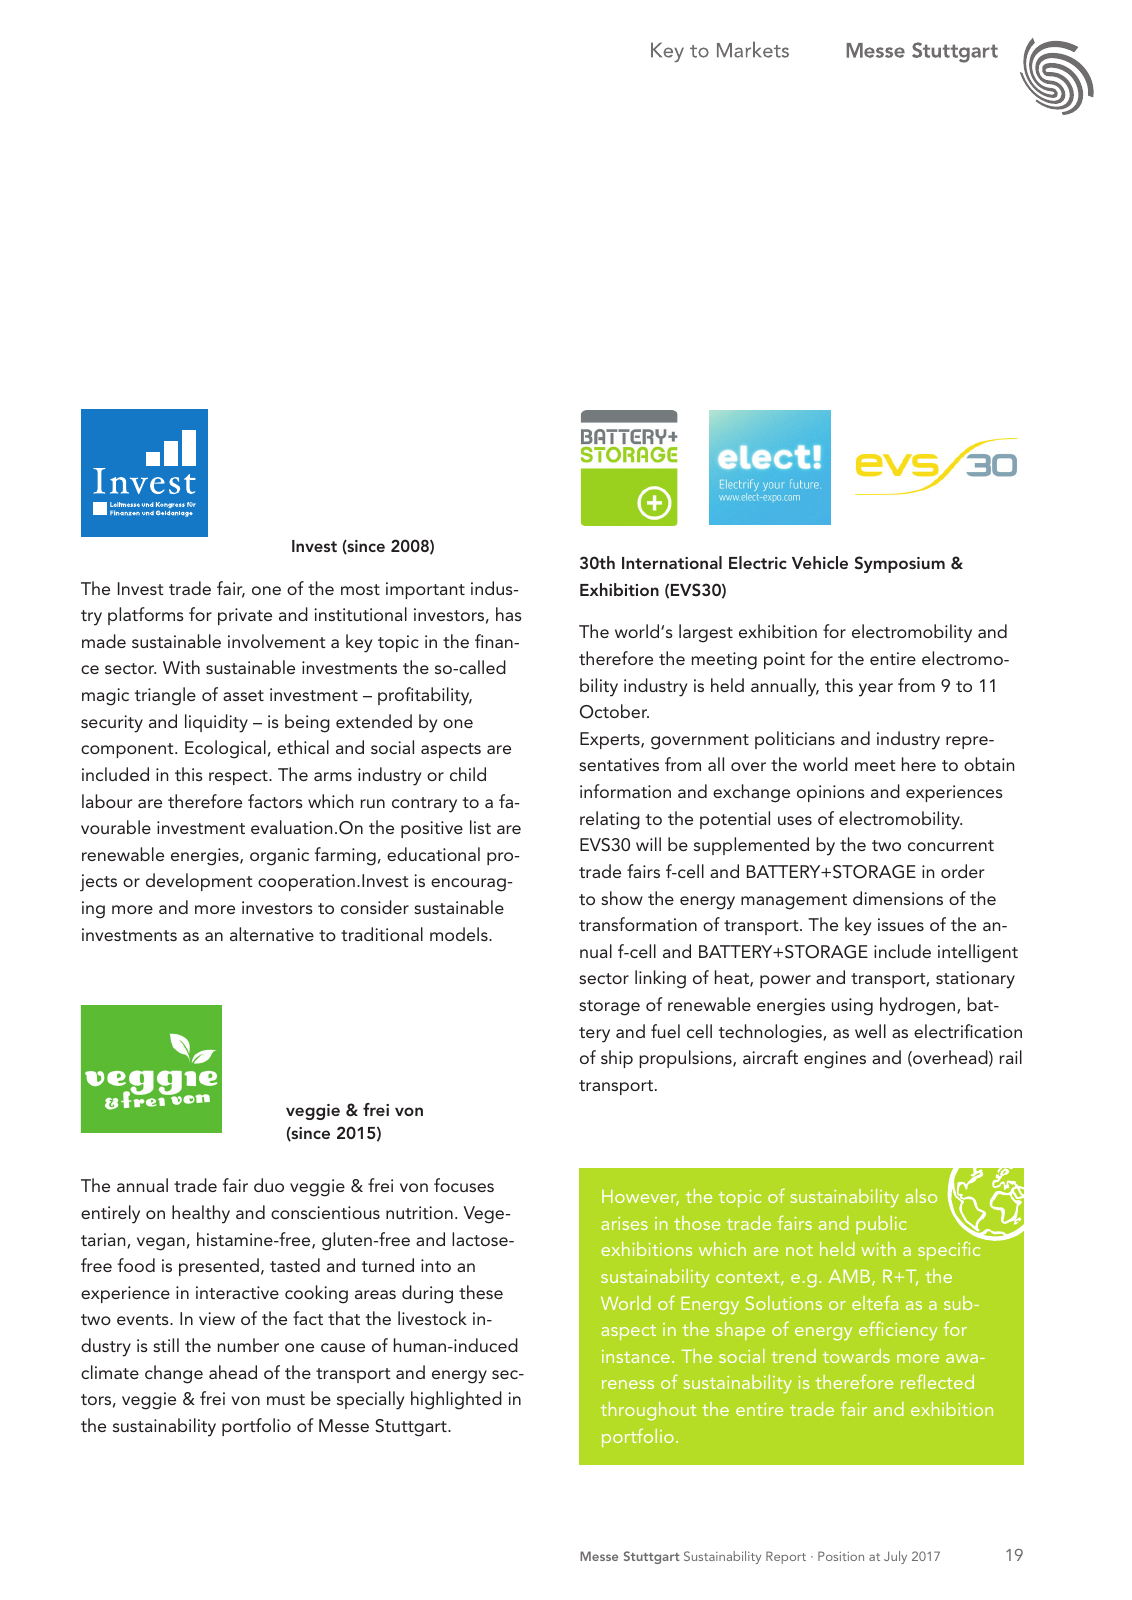 Vorschau Messe Stuttgart Sustainability Report Seite 19